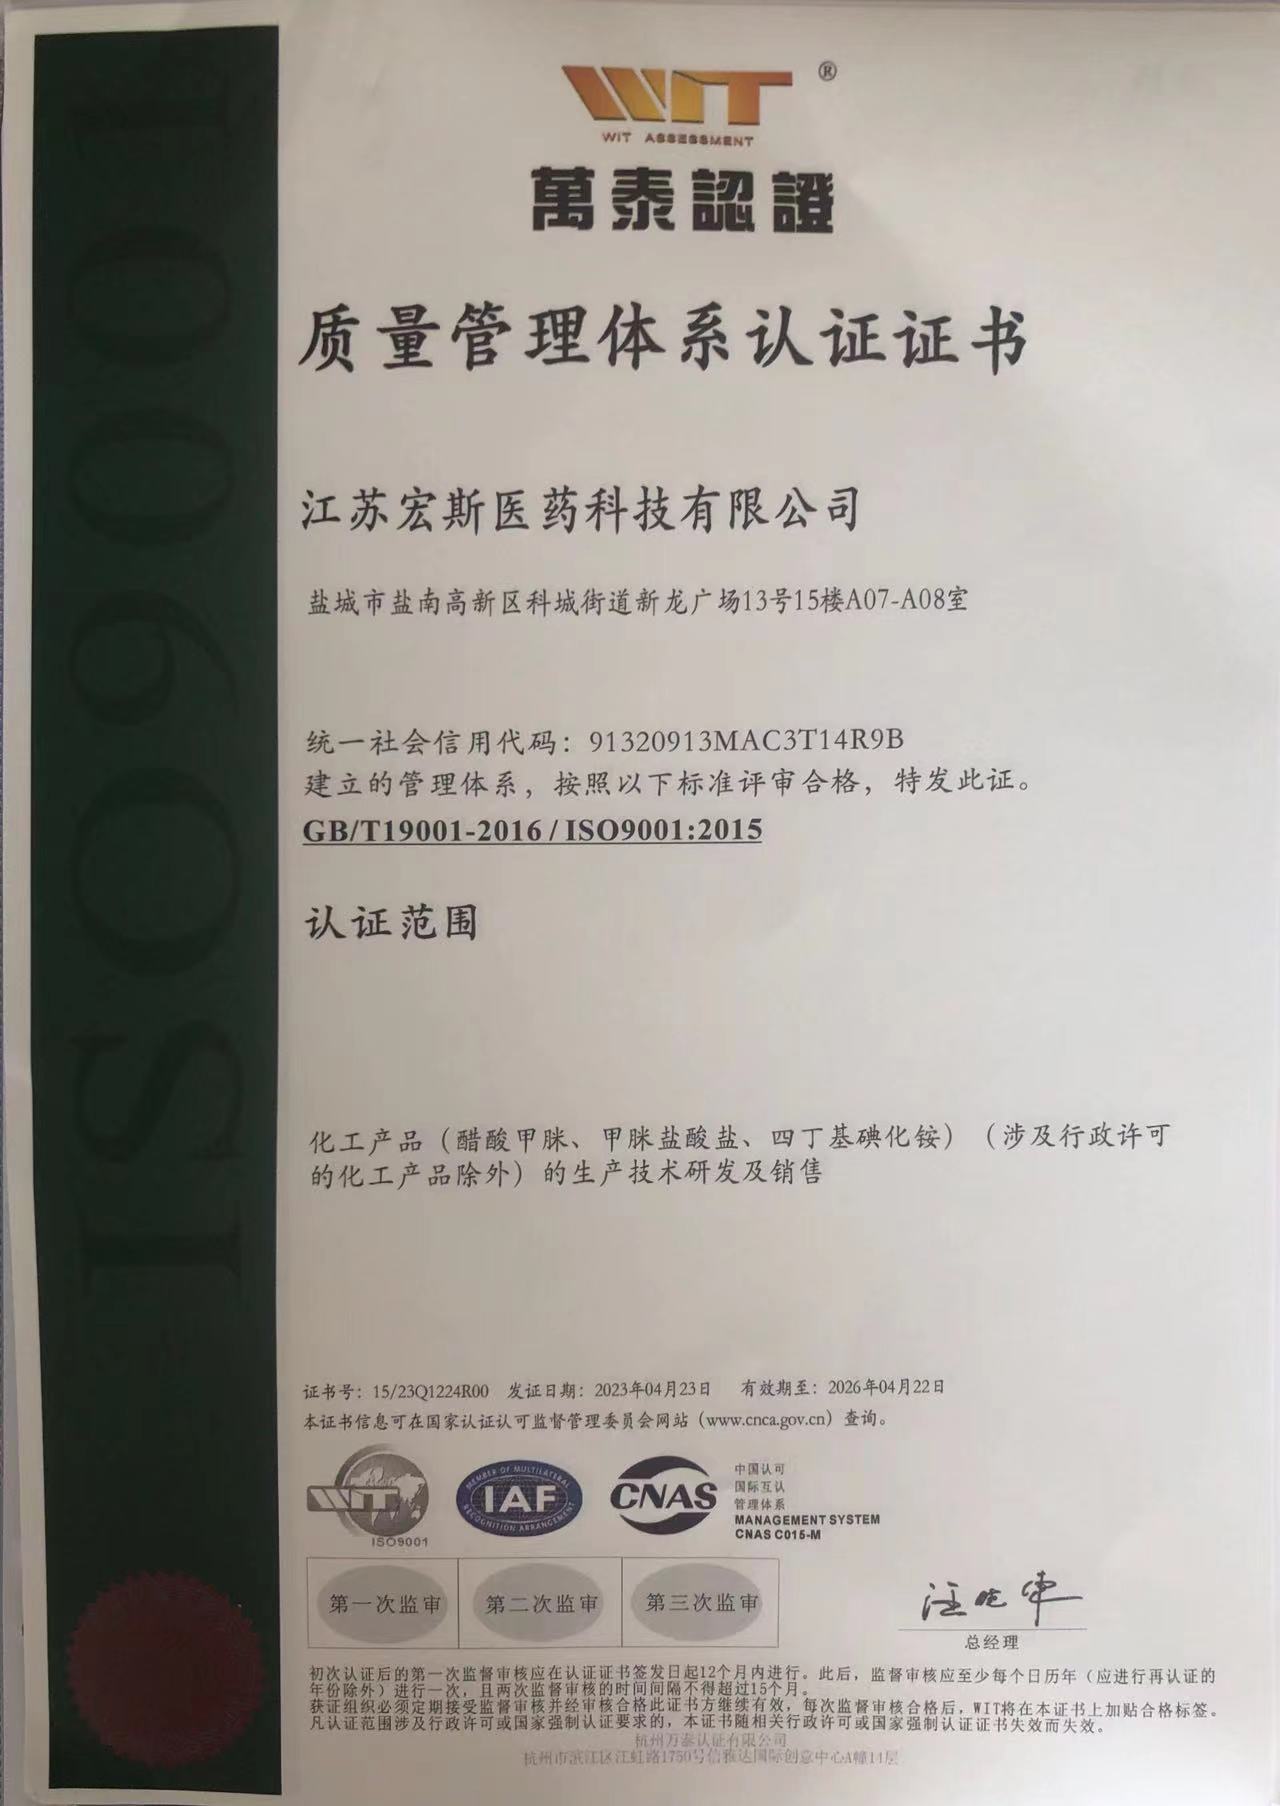 Ceiliúradh ó chroí a dhéanamh ar Jiangsu Hongsi Medical Technology Co., Ltd. gur éirigh le deimhniú córais cáilíochta idirnáisiúnta ISO9001:2015